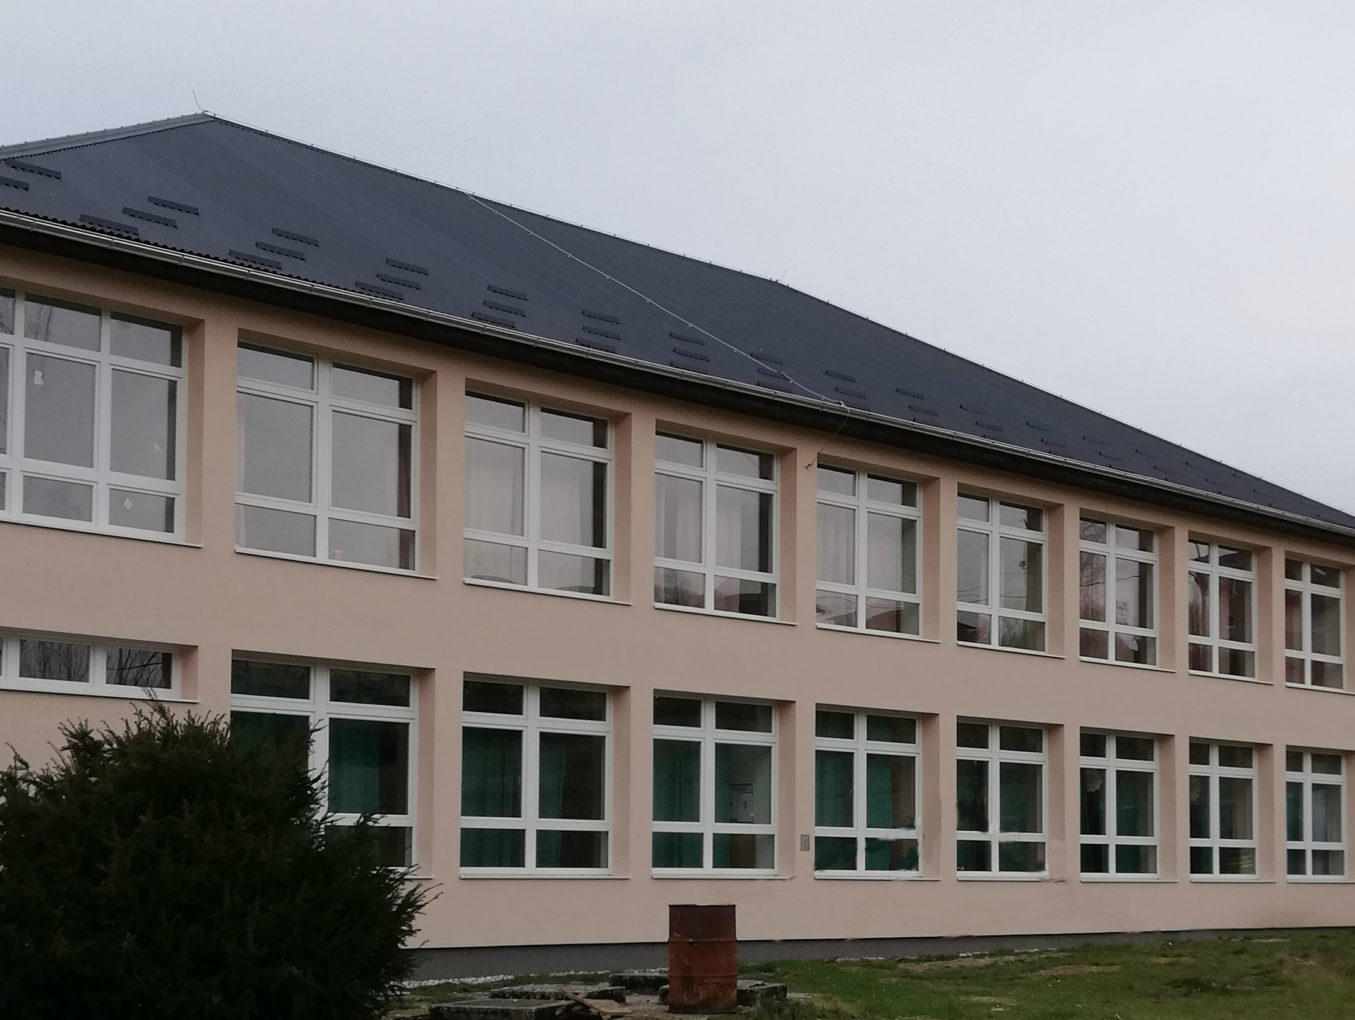 Završena energetska obnova zgrade Područne škole Julijane E. Drašković Cvetlin